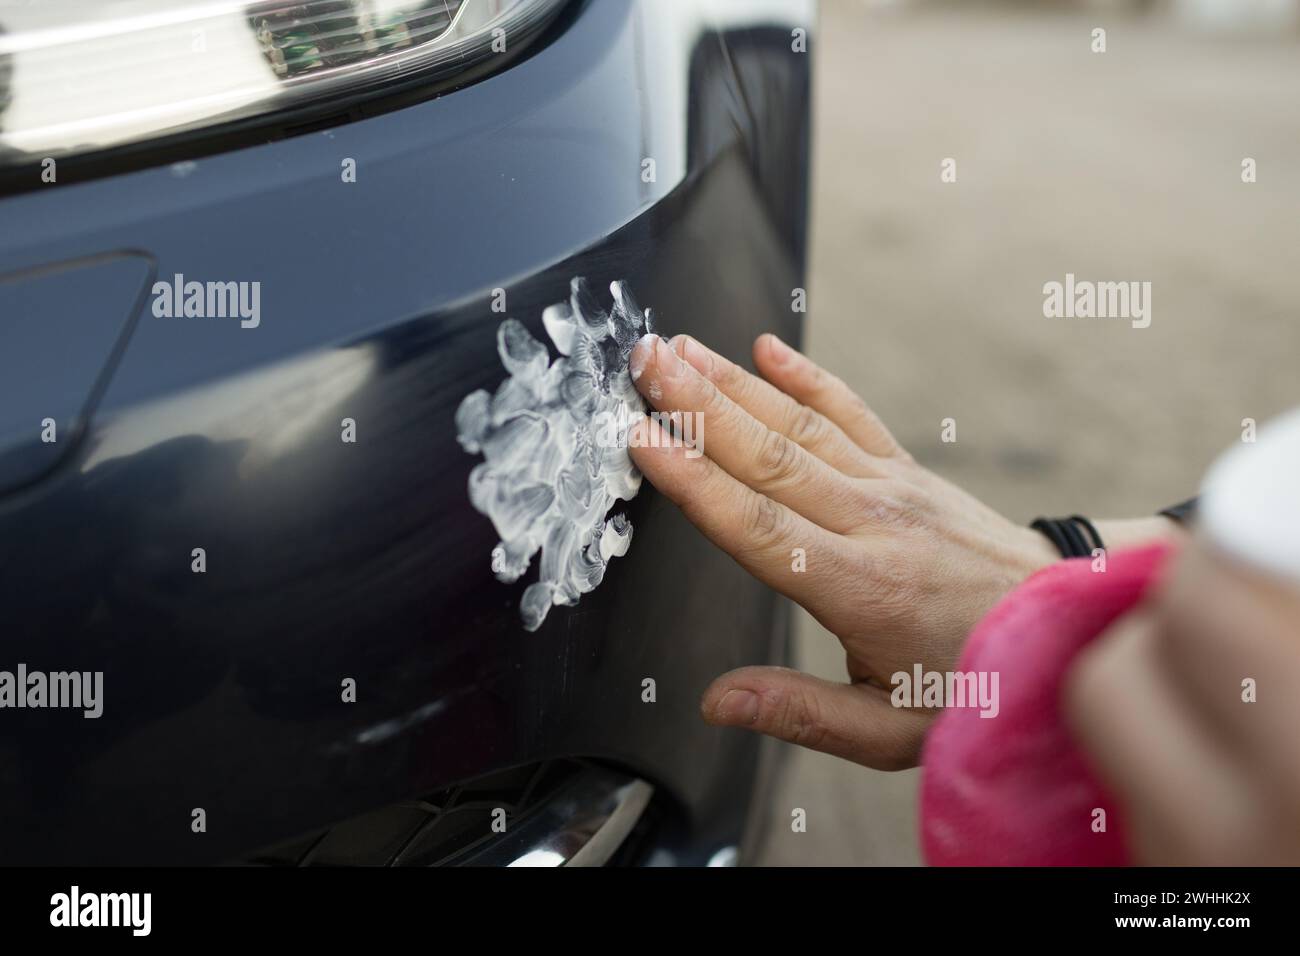 Handarbeit zur Reinigung des Autos mit manueller Polierpaste mit Mikrofasertuch, das den Lacklack des Parkleiters aufzeigt Stockfoto